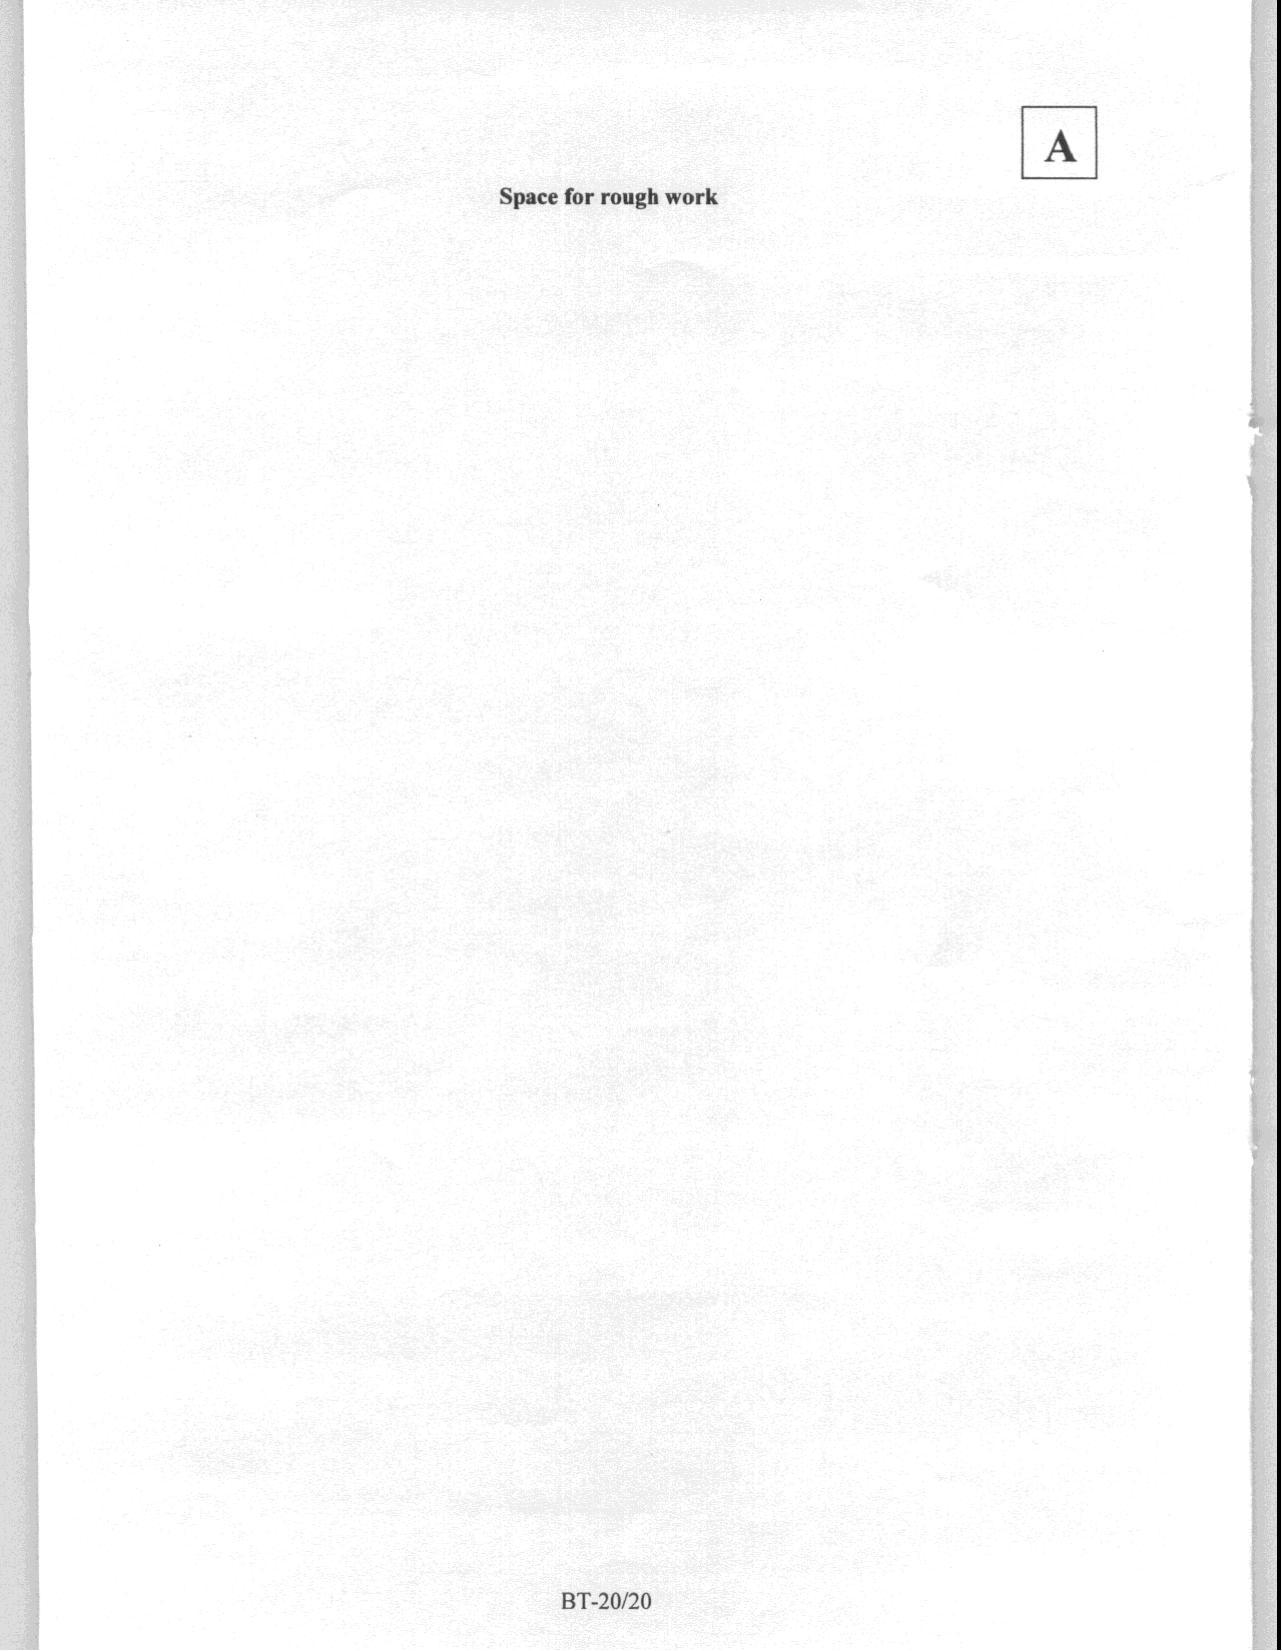 JAM 2008: BT Question Paper - Page 22